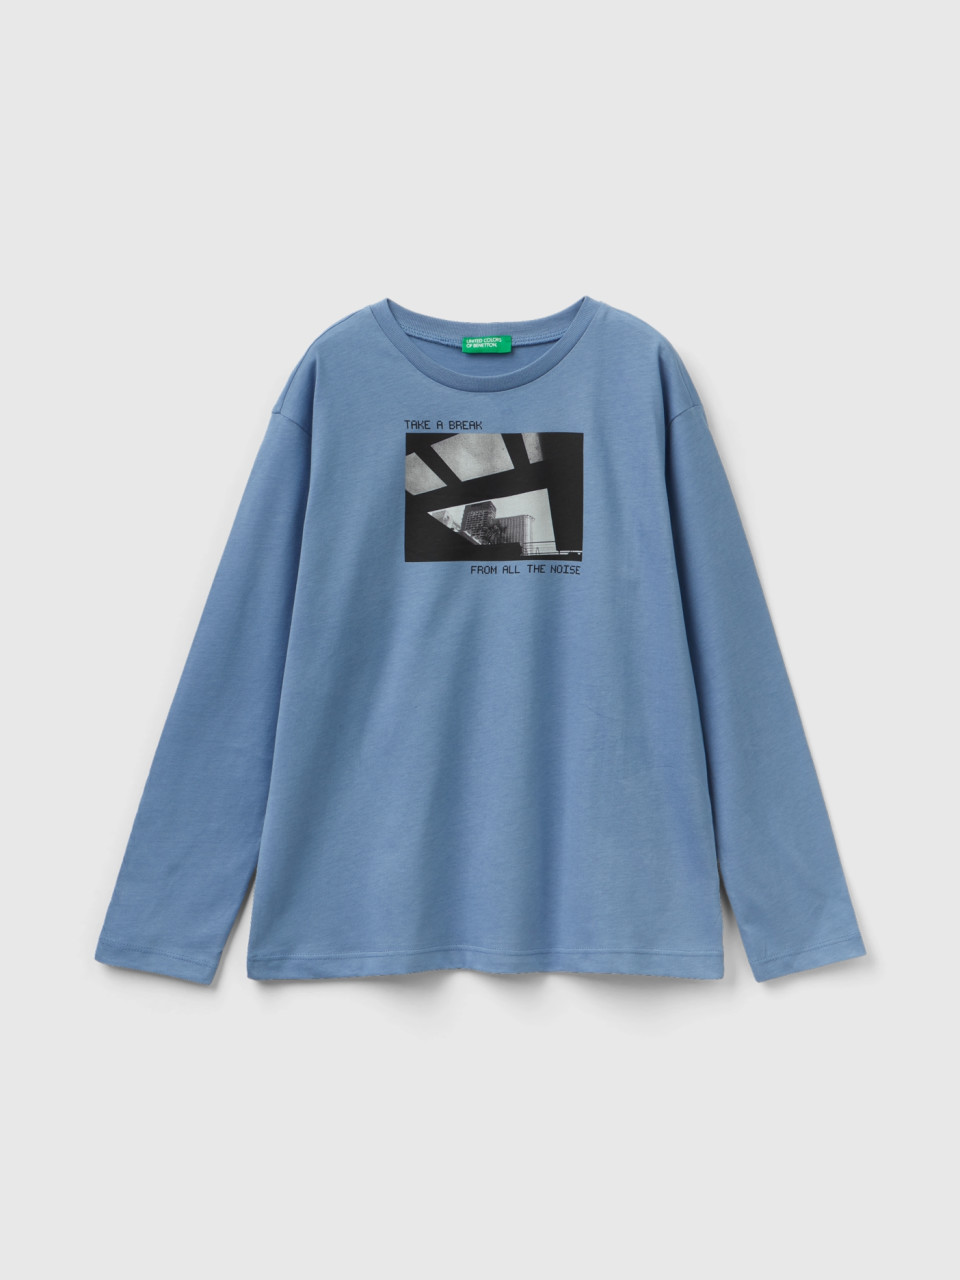 Benetton, Warmes T-shirt Mit Fotoprint, Azurblau, male